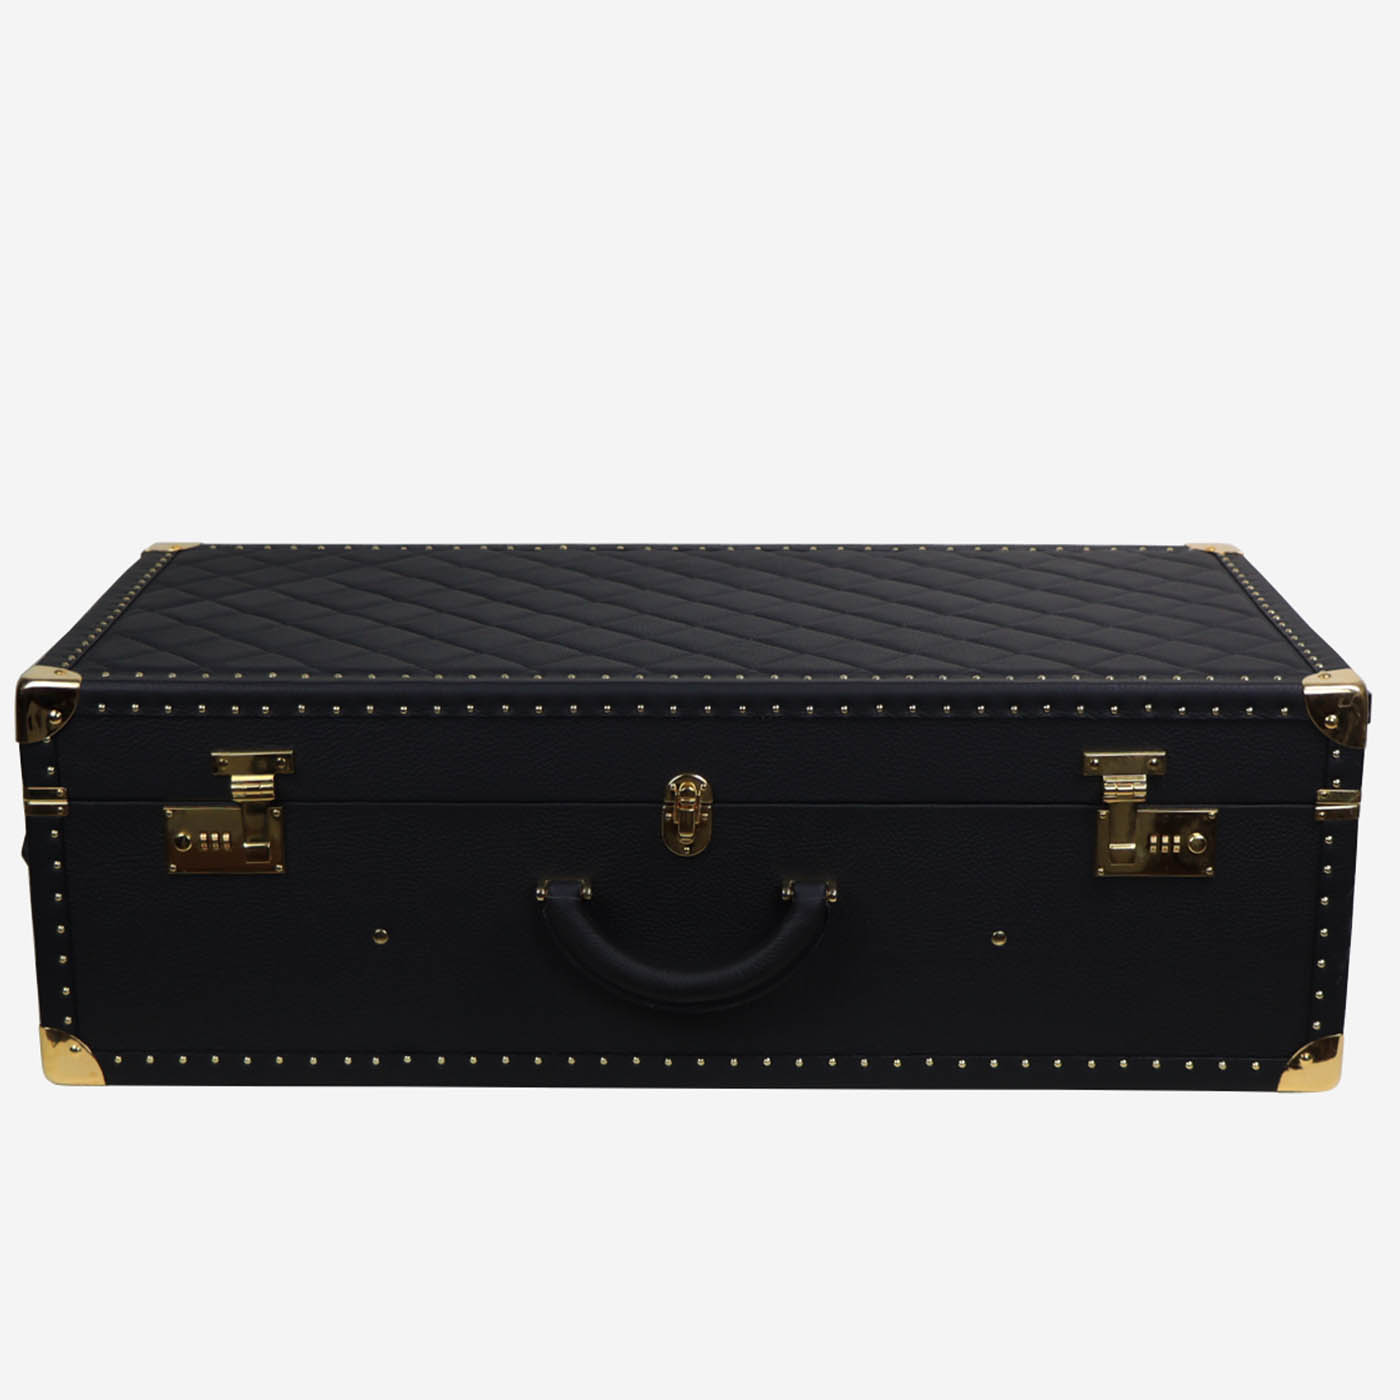 Regale Quilted Medium Black Suitcase (valise noire matelassée) - Vue alternative 3